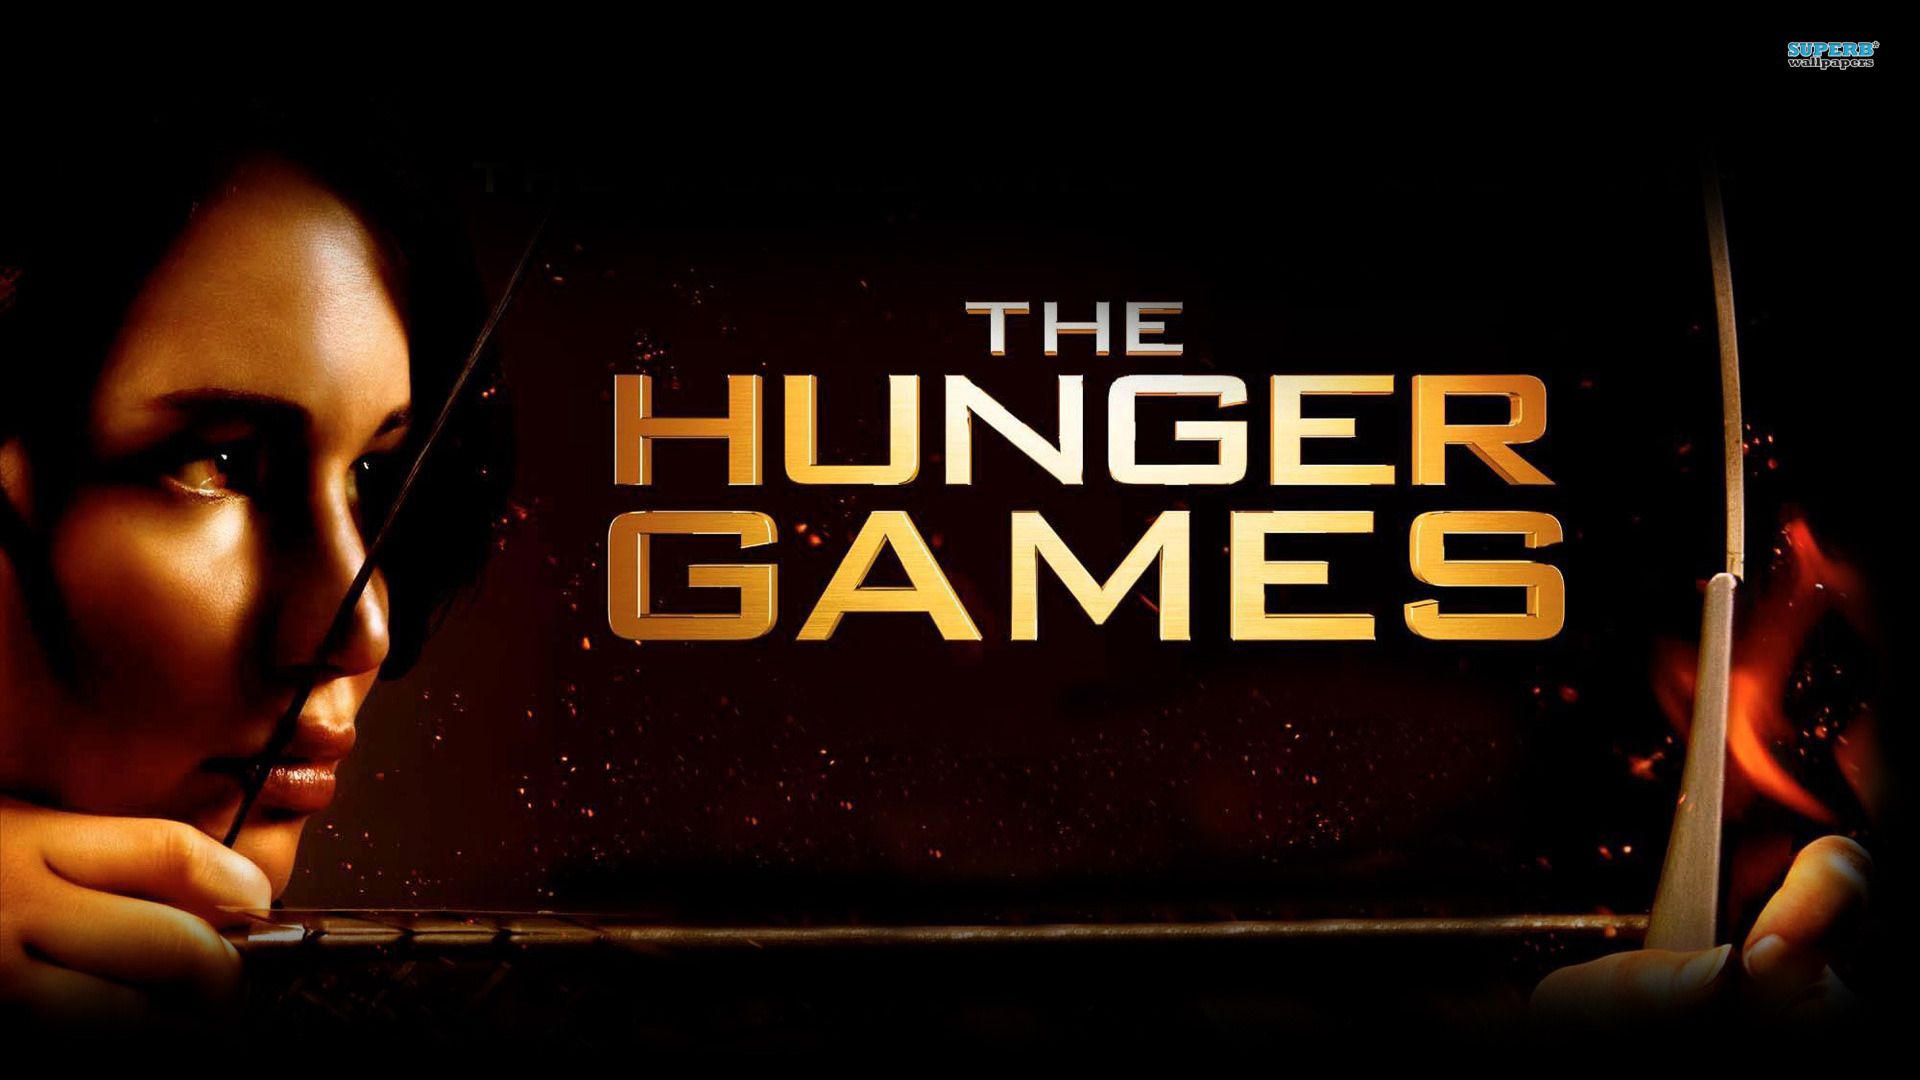 Katniss Everdeen - The Hunger Games wallpaper - Movie wallpapers